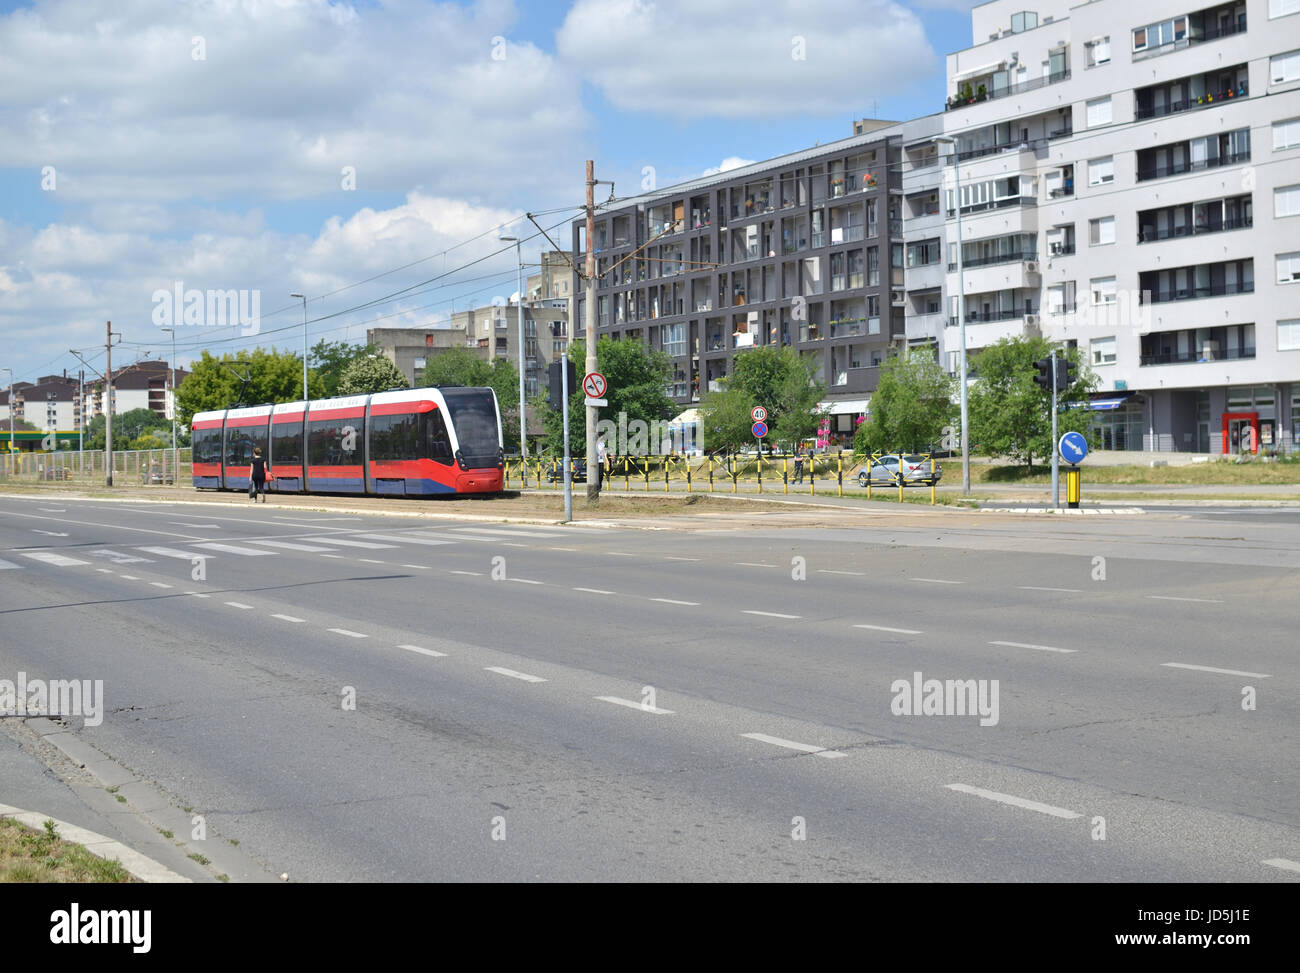 Rote Straßenbahn auf einem Boulevard im Wohngebiet von einer europäischen Stadt - Belgrad, Serbien Stockfoto